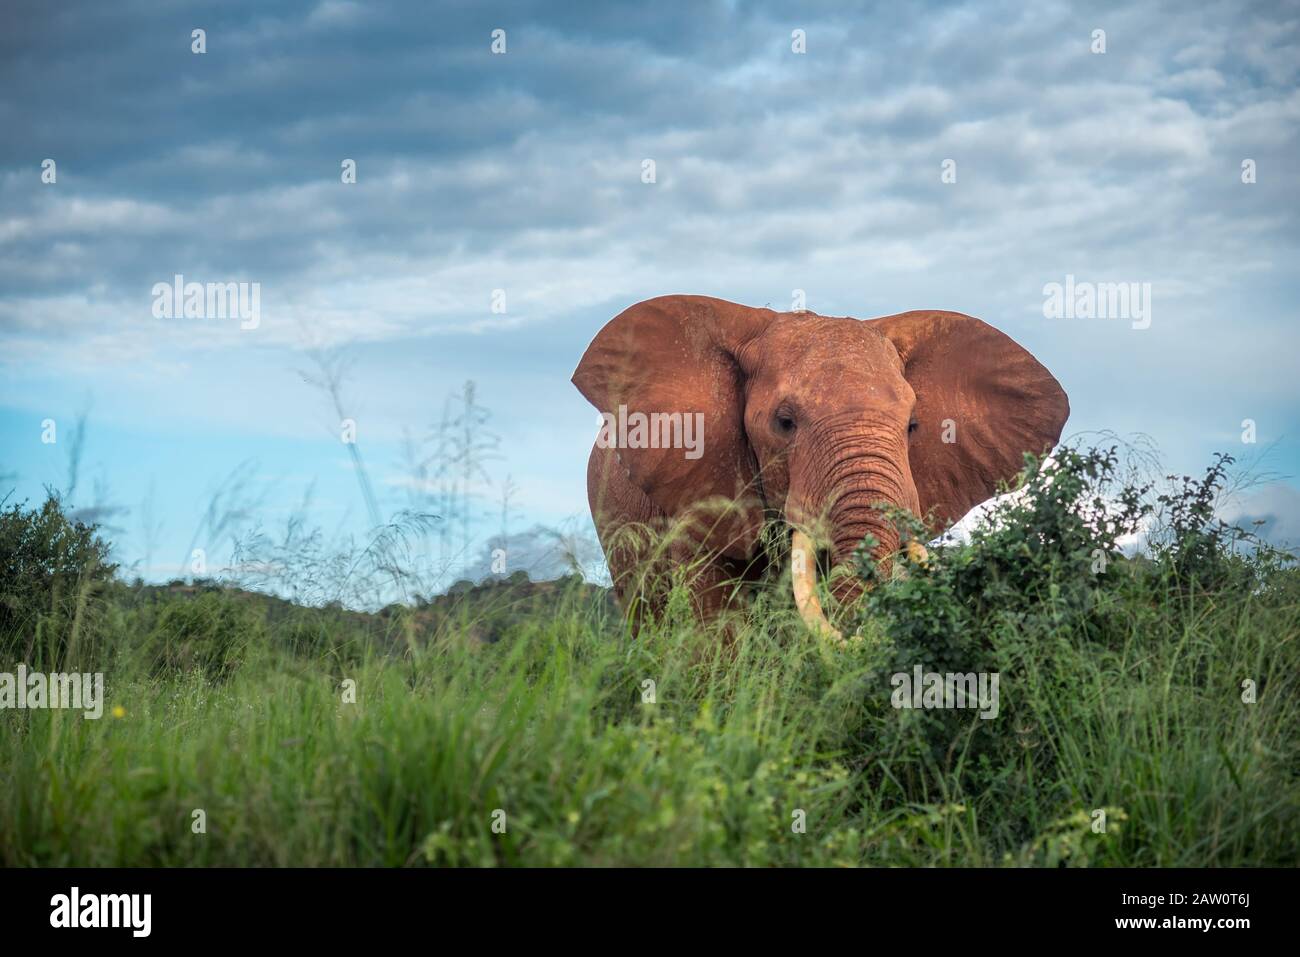 Famille des éléphants dans la savane, safari en Afrique, Kenya, Tanzanie, Ouganda éléphants luttant dans le parc national chasse au Botswana éléphants de chasse Banque D'Images